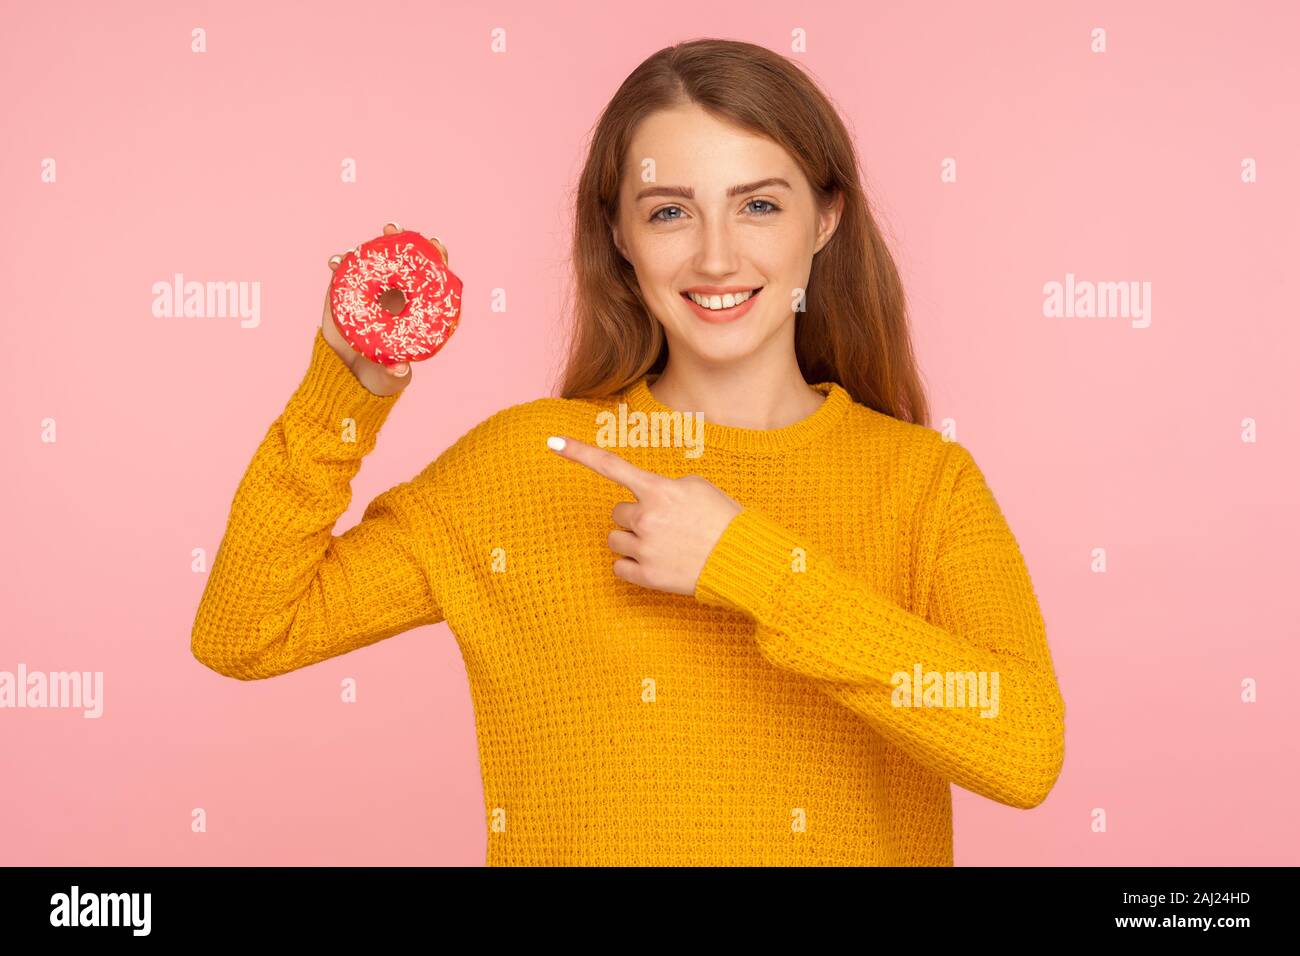 Regardez donut ! Portrait of smiling cute girl à gingembre sweater pointant vers donut rose and smiling at camera, montrant, de confiserie de sucre sucré j Banque D'Images